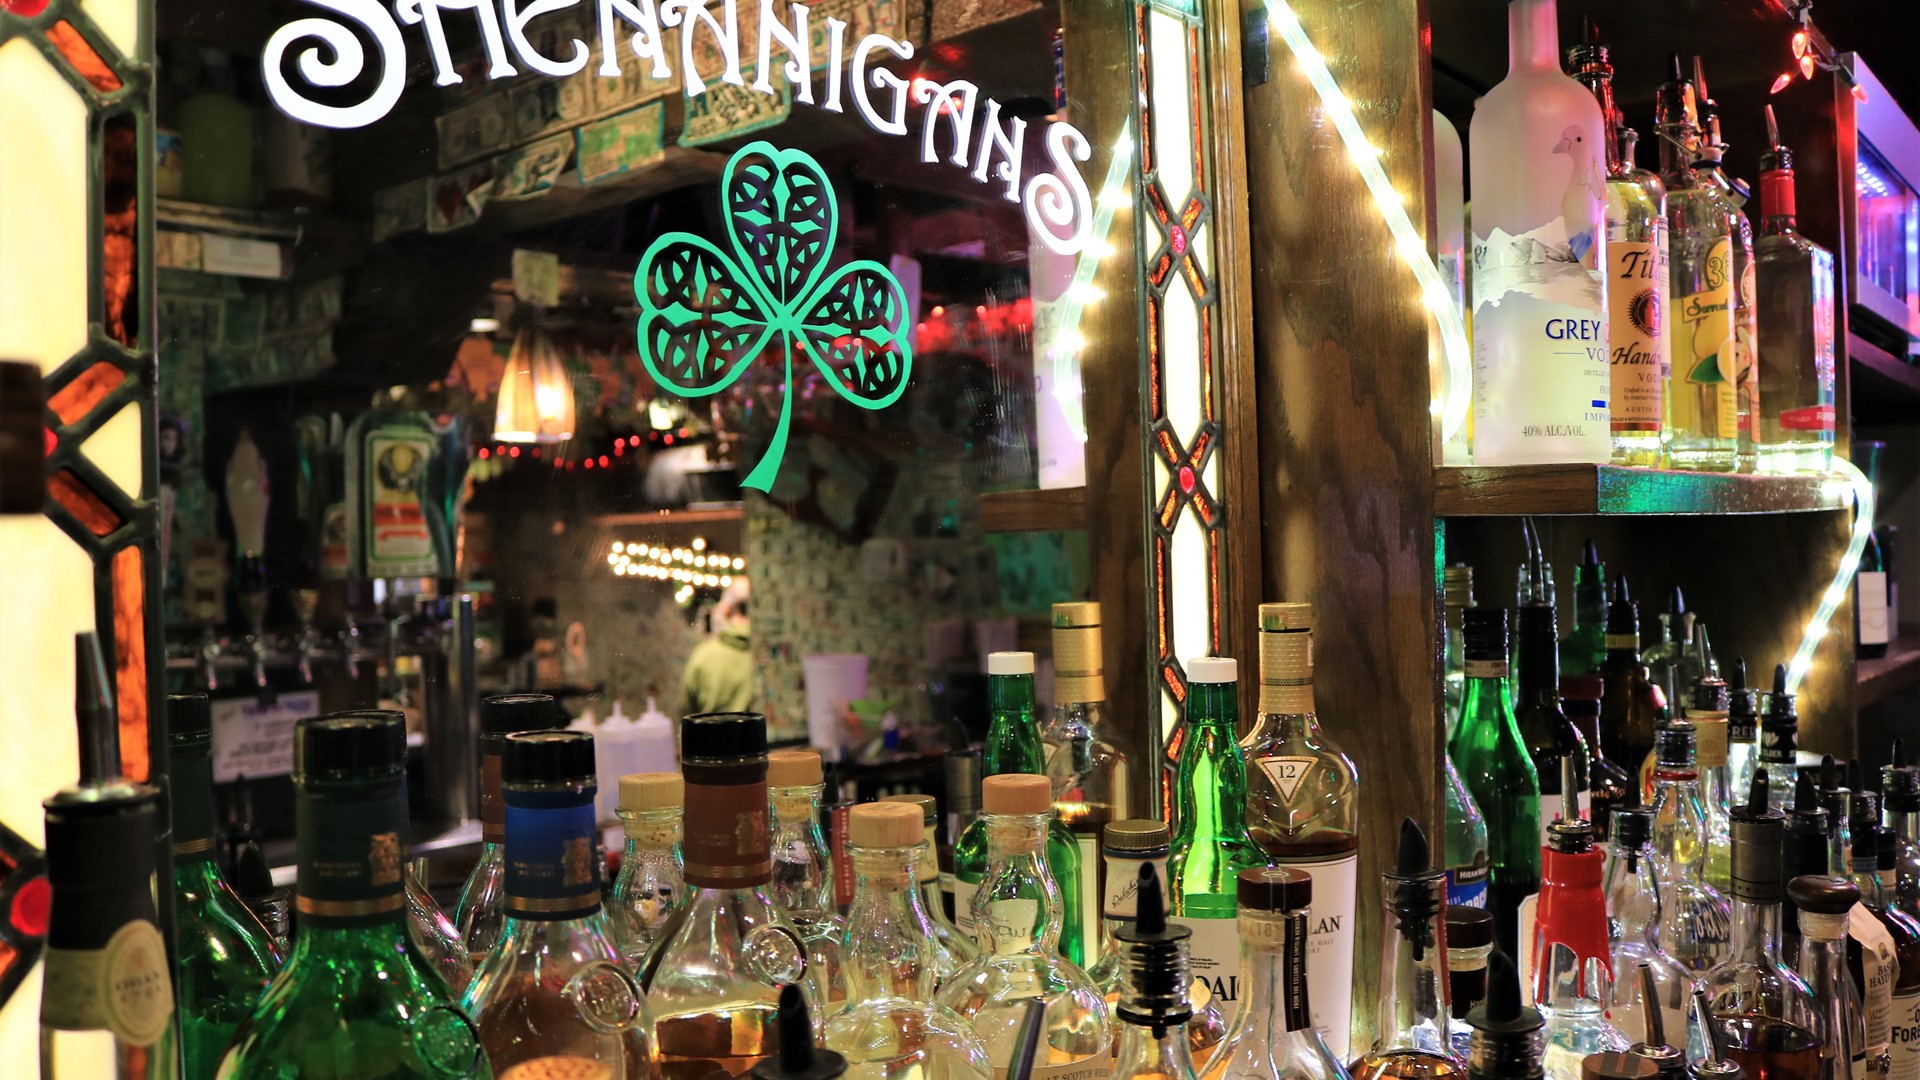 Shenanigans Irish Pub.